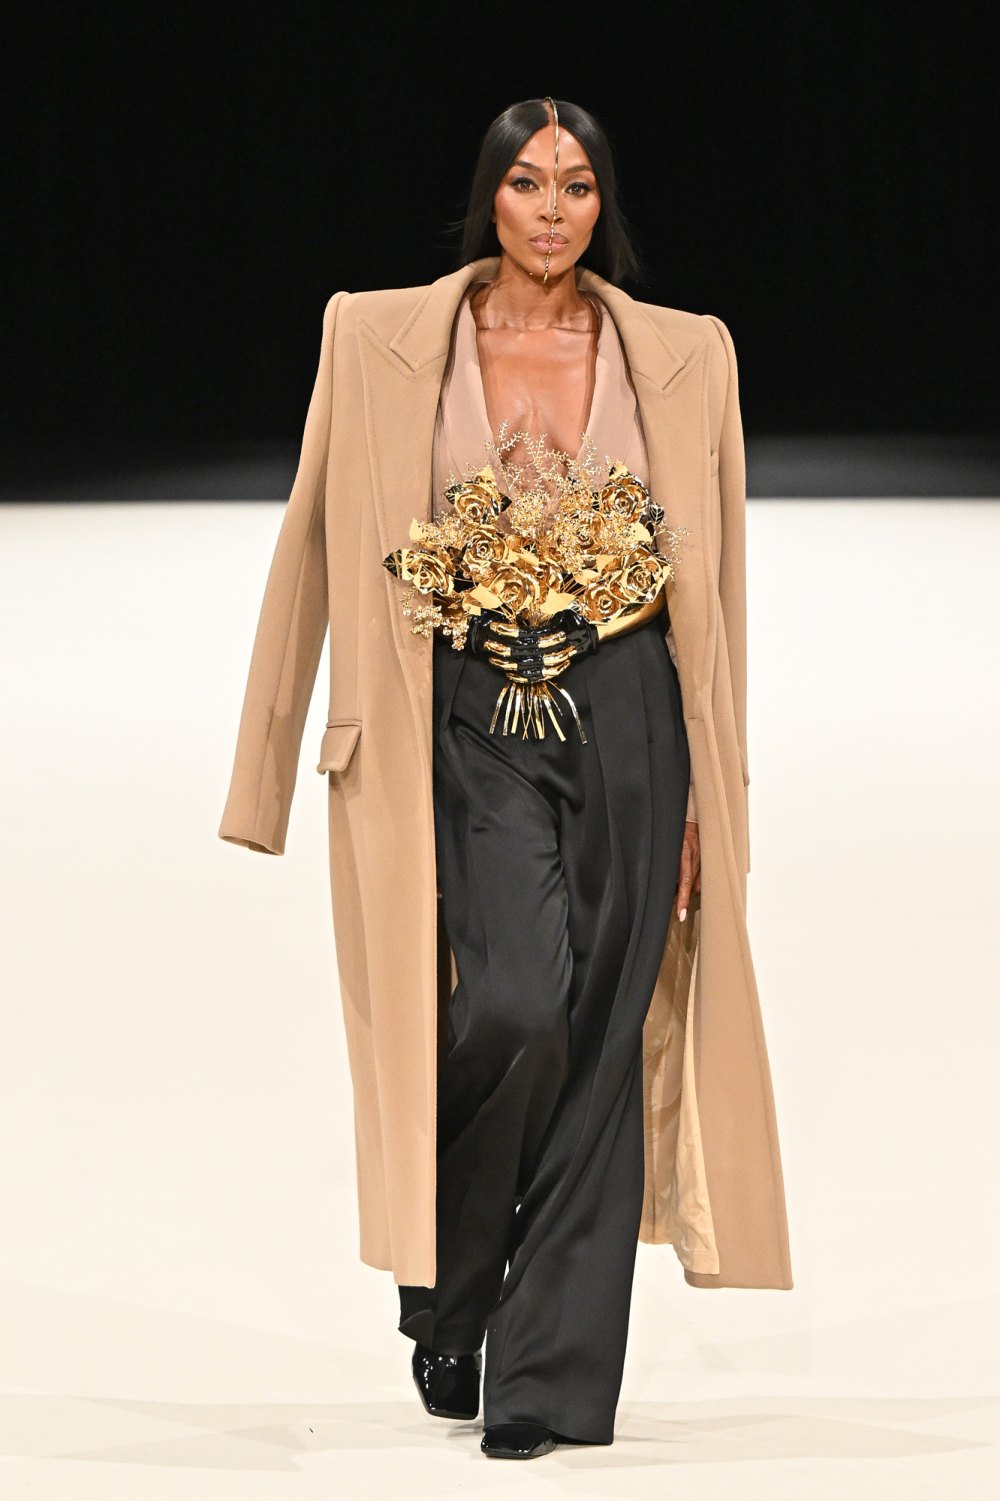 Naomi Campbell Closes Out Balmain Menswear Show at Paris Fashion Week